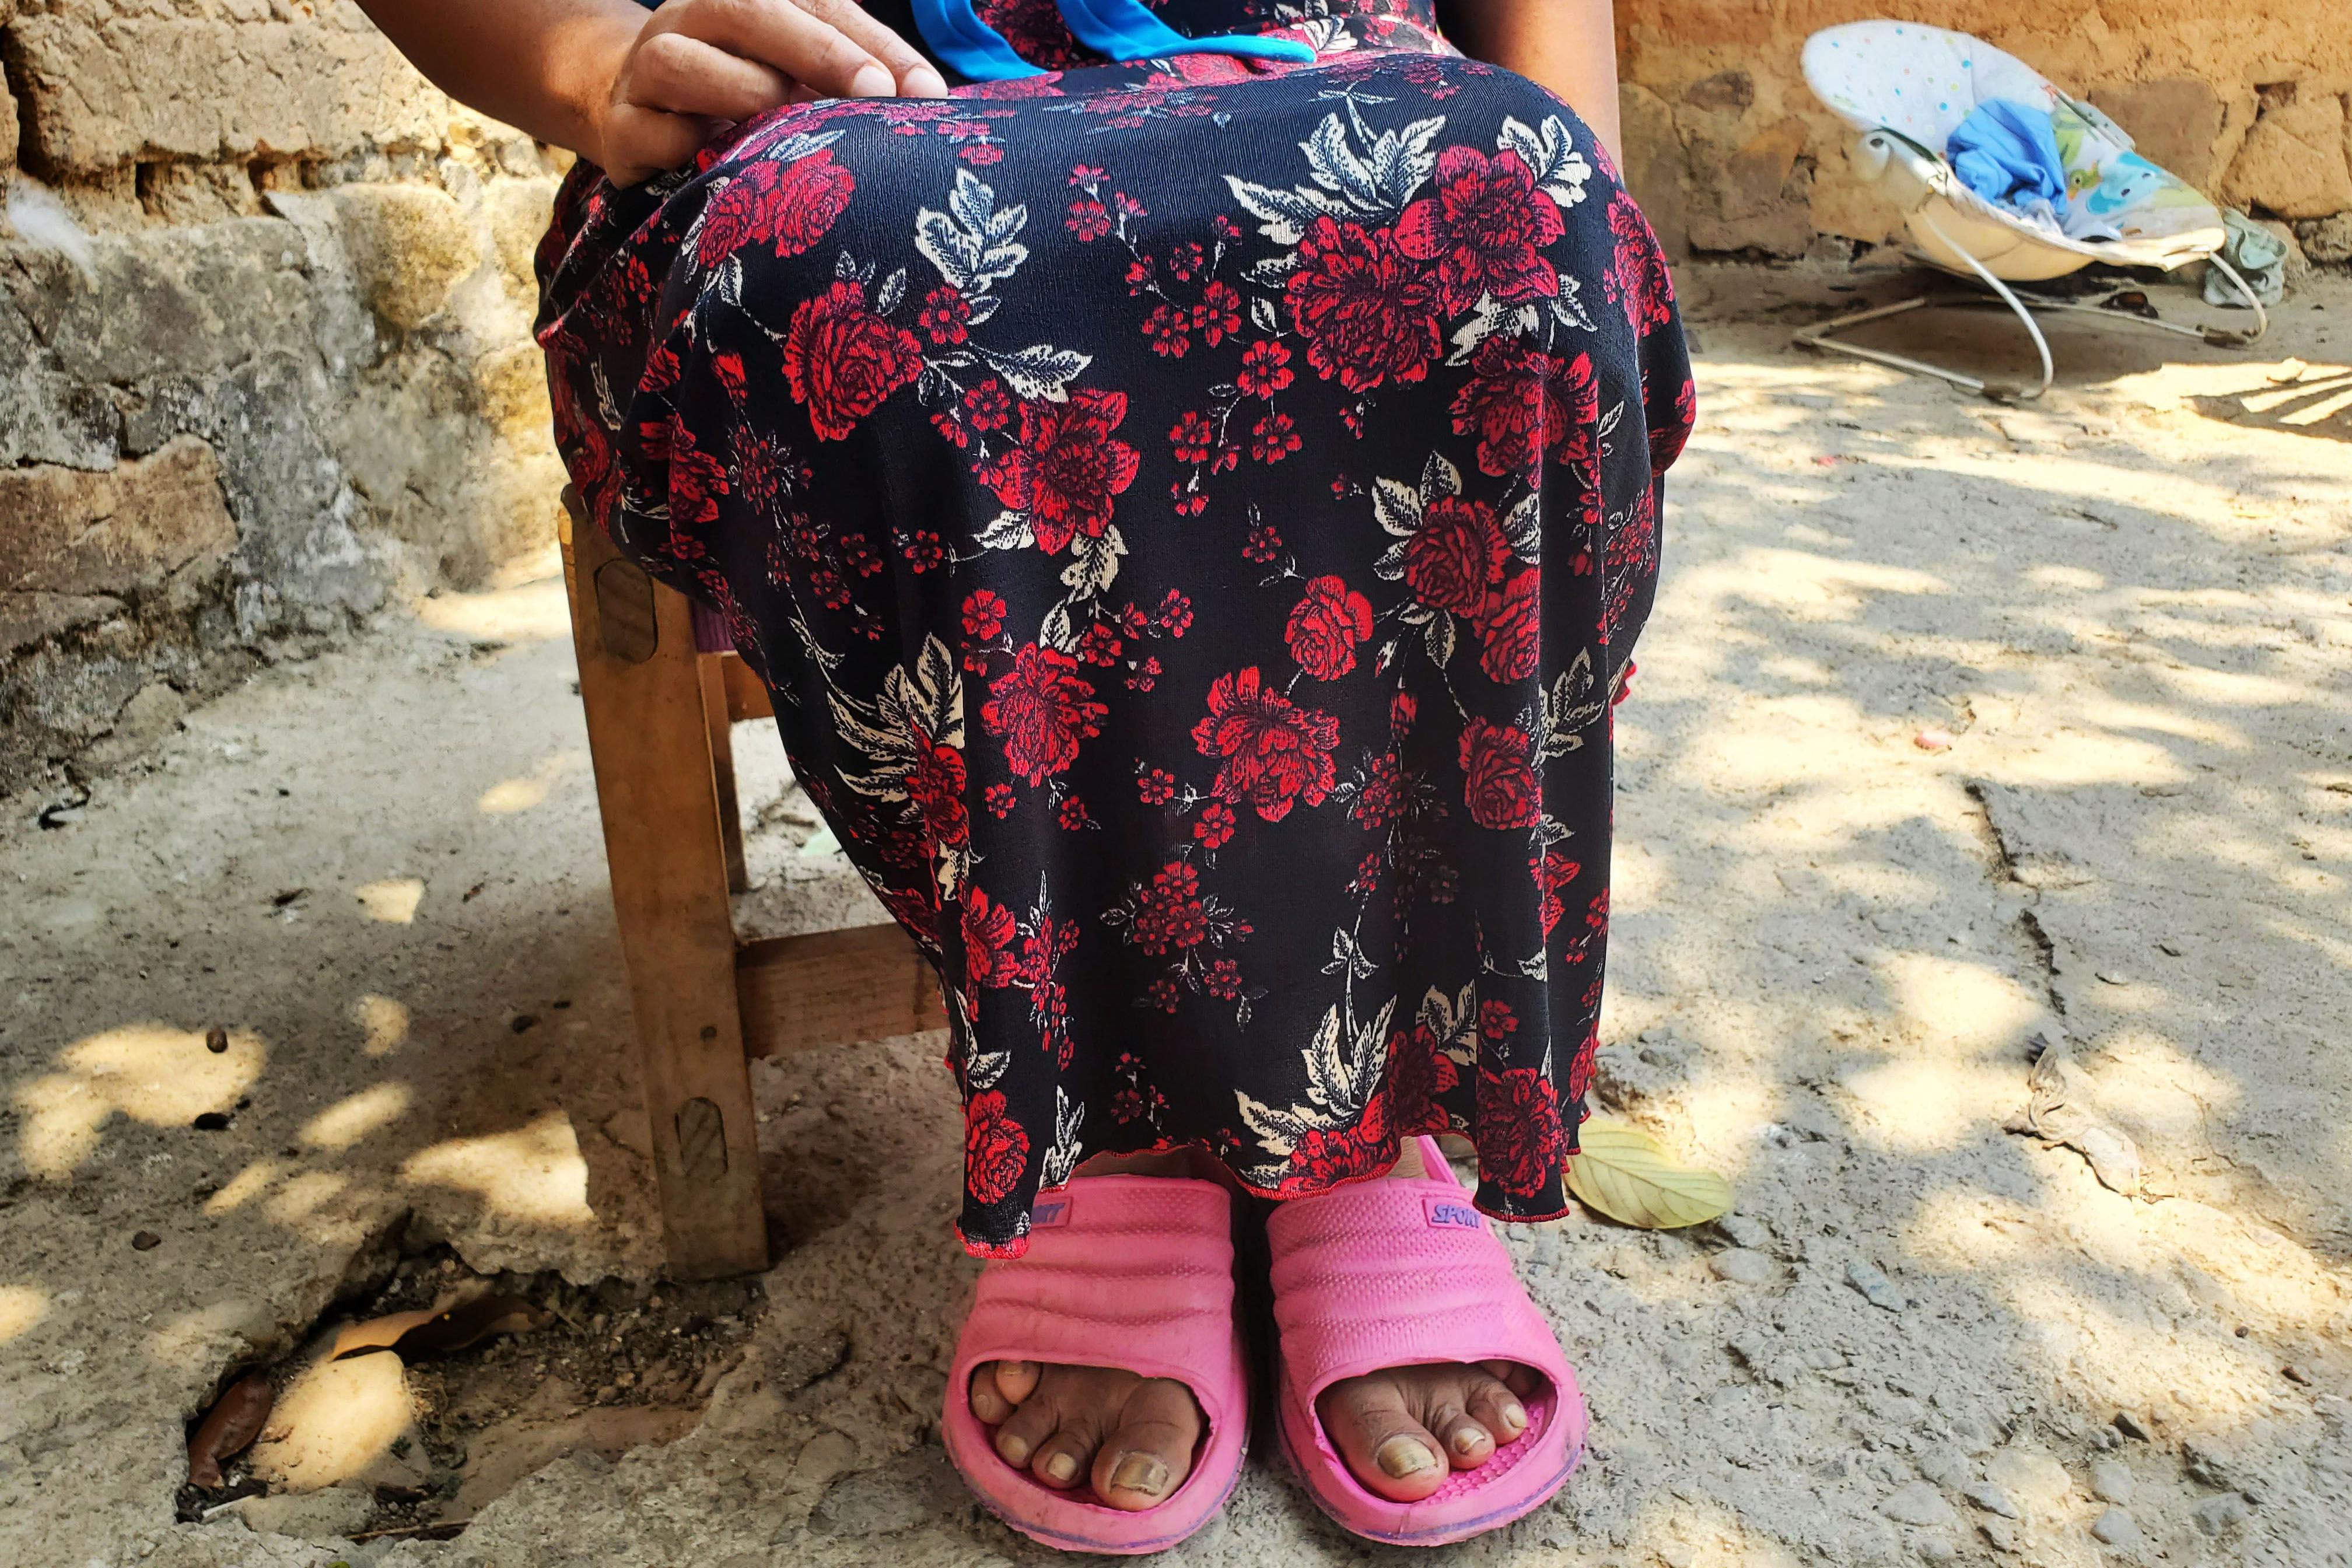 Norma, partidaria de eliminar la práctica de la venta de niñas en la comunidad, prefirió no mostrar su imagen. (MARCOS GONZÁLEZ / BBC).